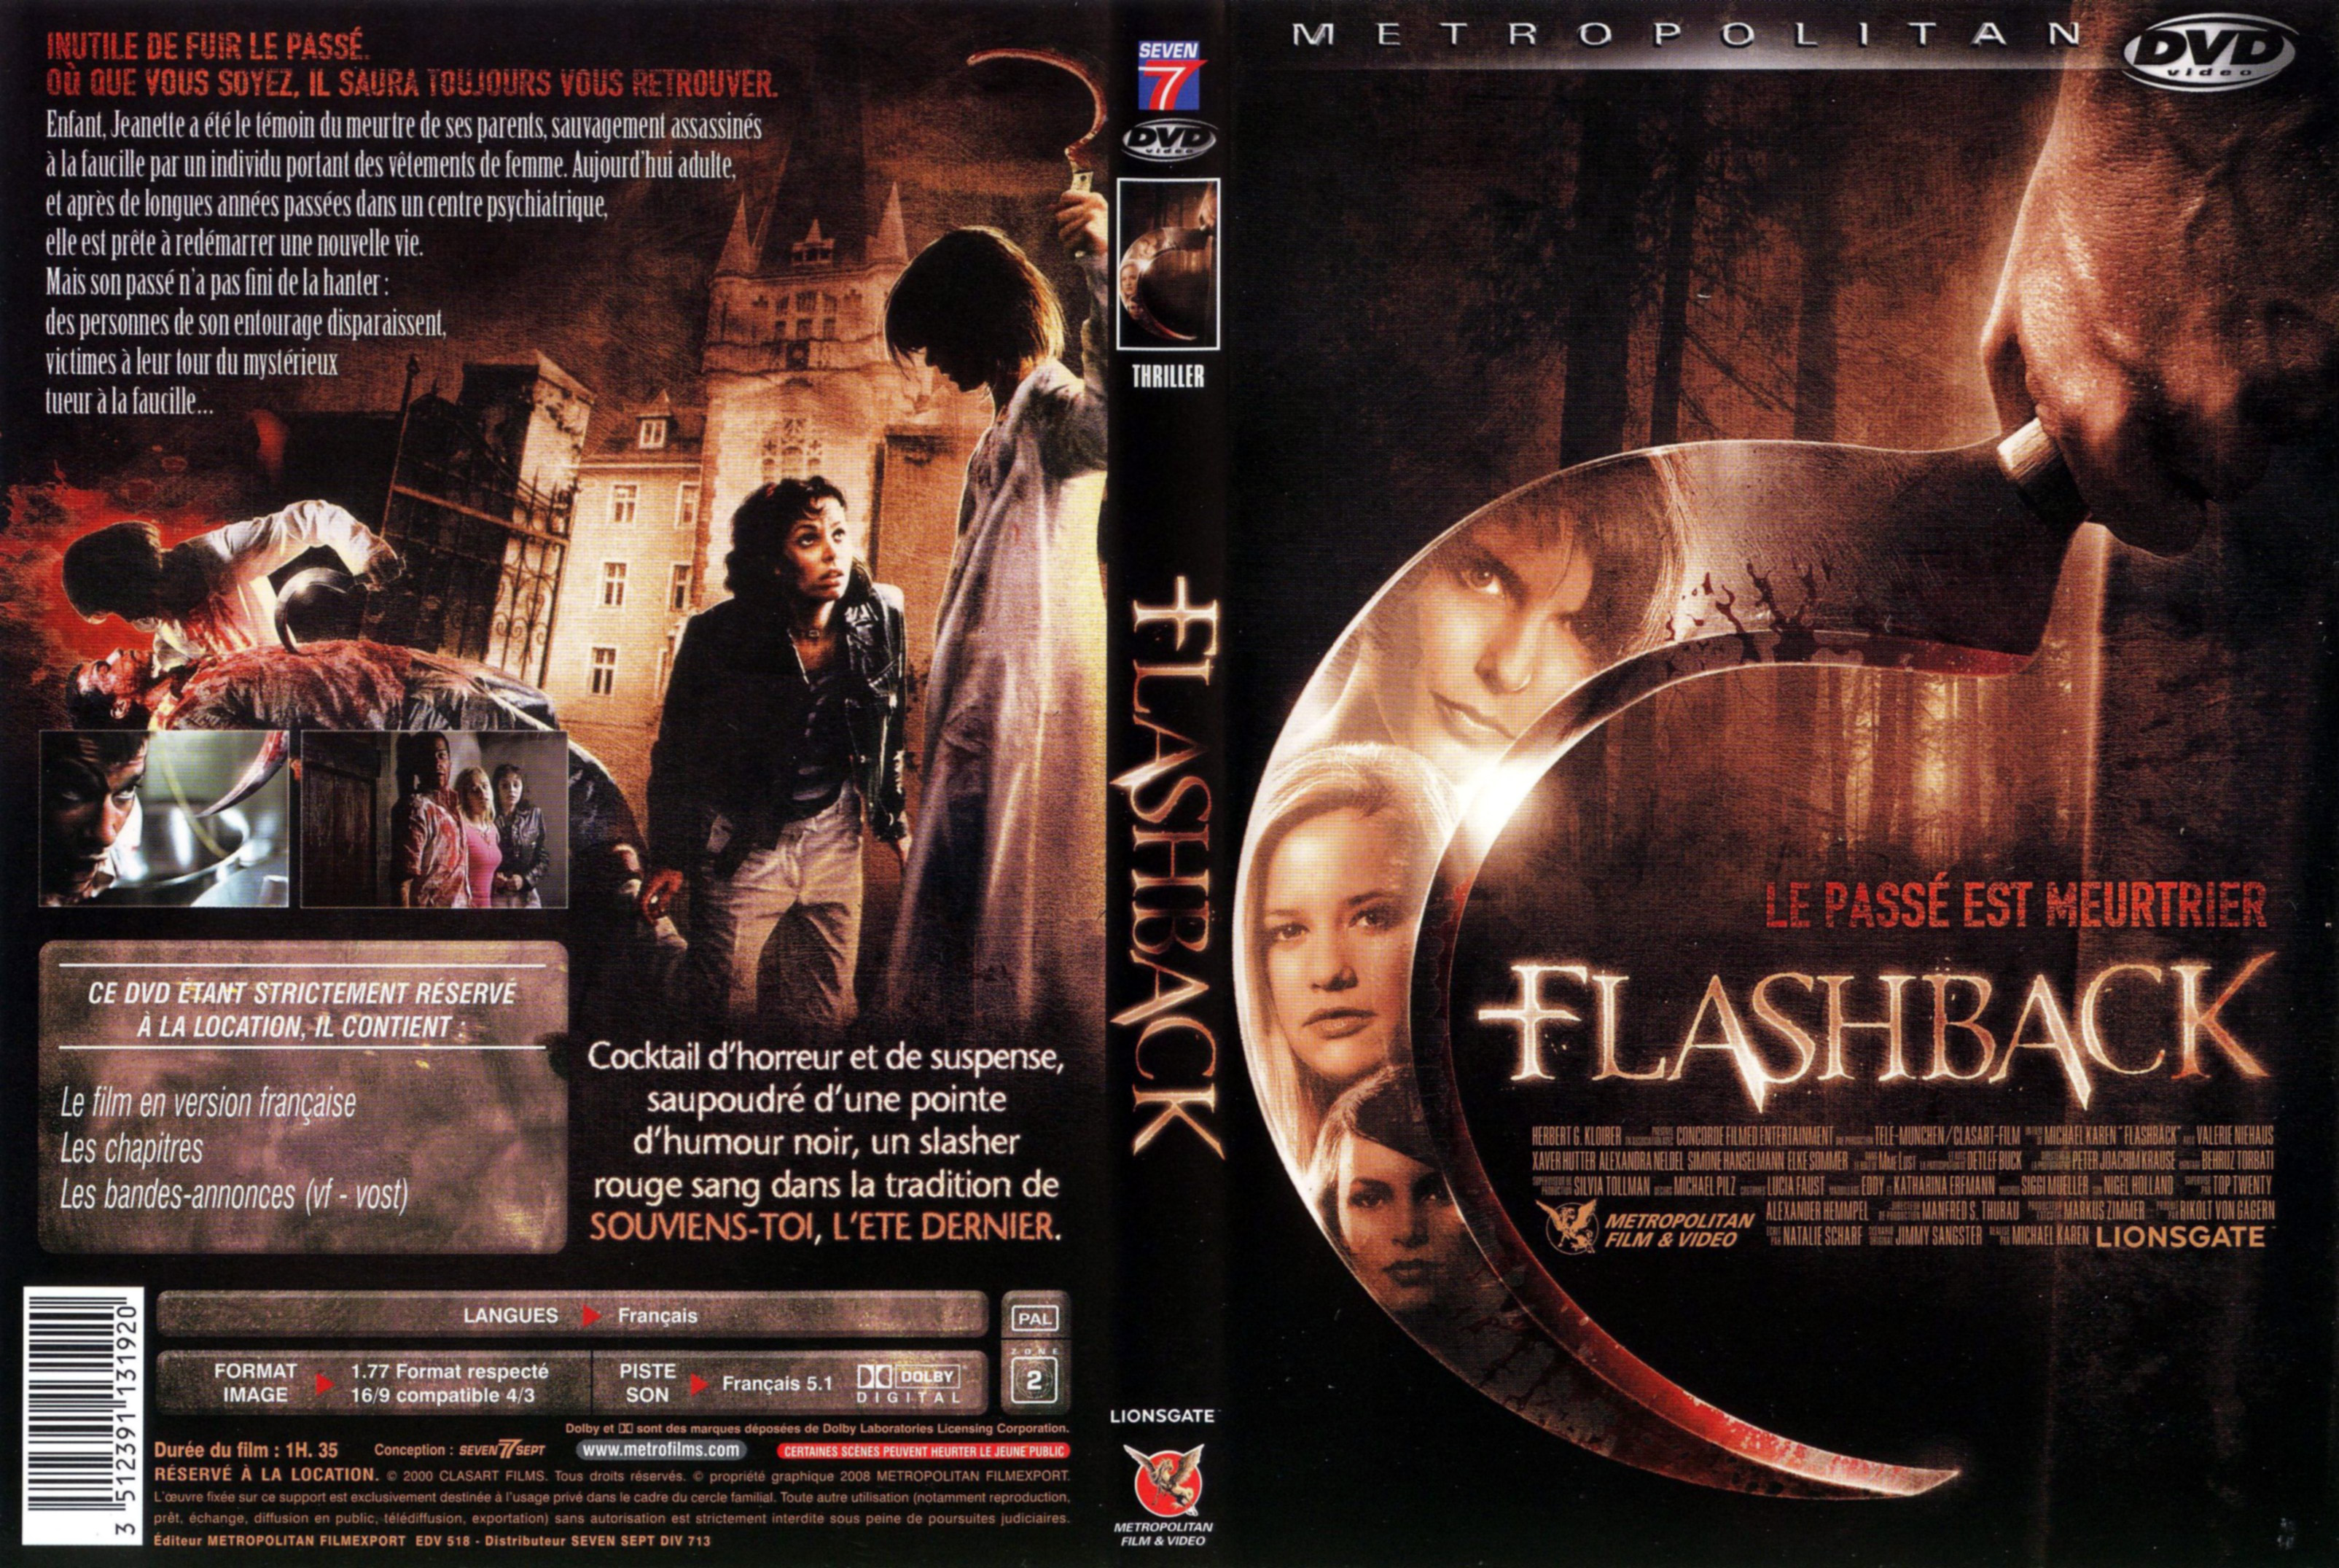 Jaquette DVD Flashback